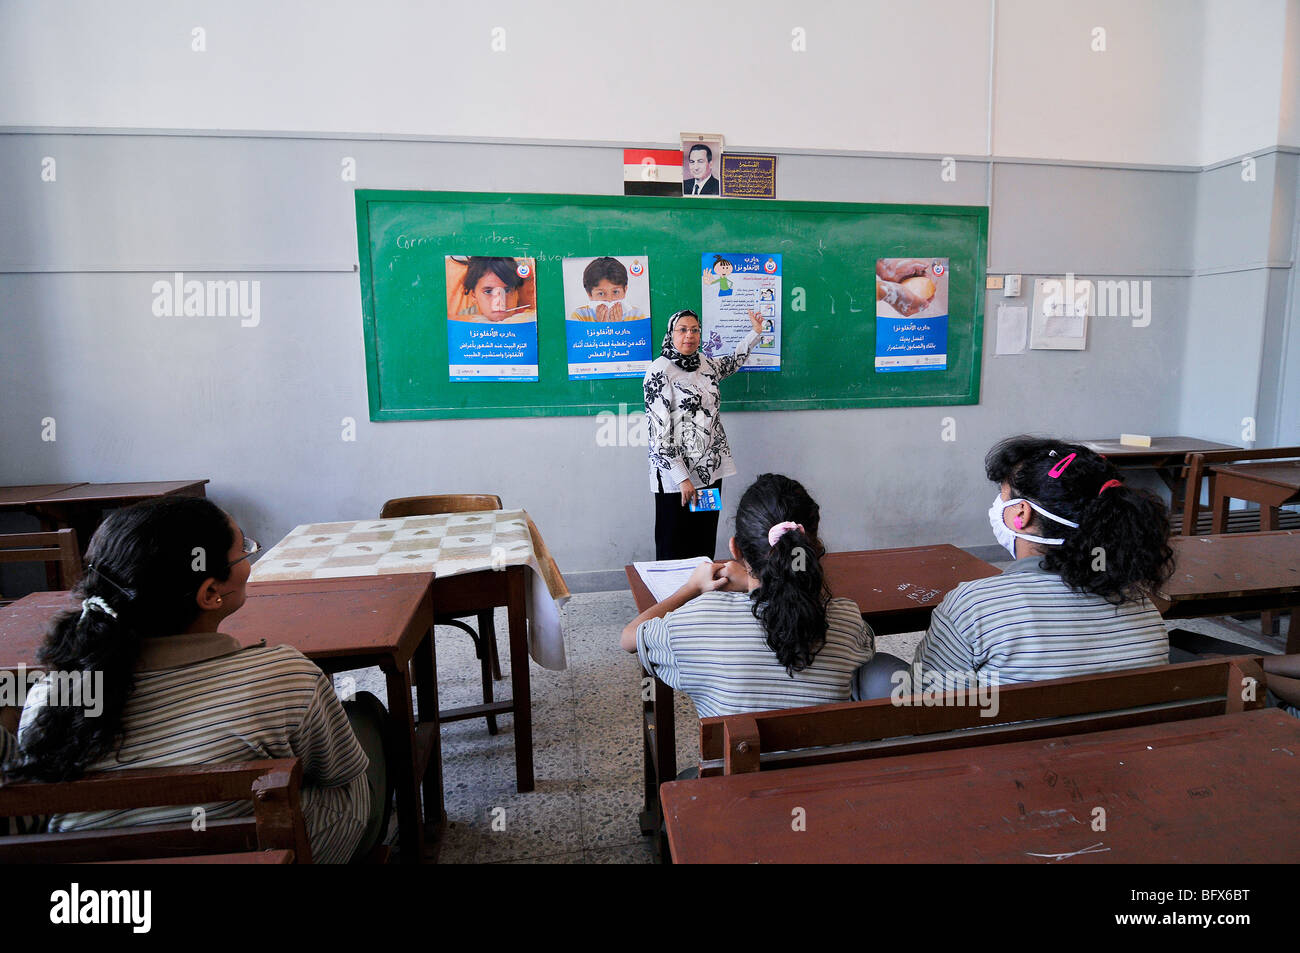 Presso le scuole in Egitto hanno classi circa l'influenza suina come una misura di prevenzione, con opuscoli e poster Foto Stock